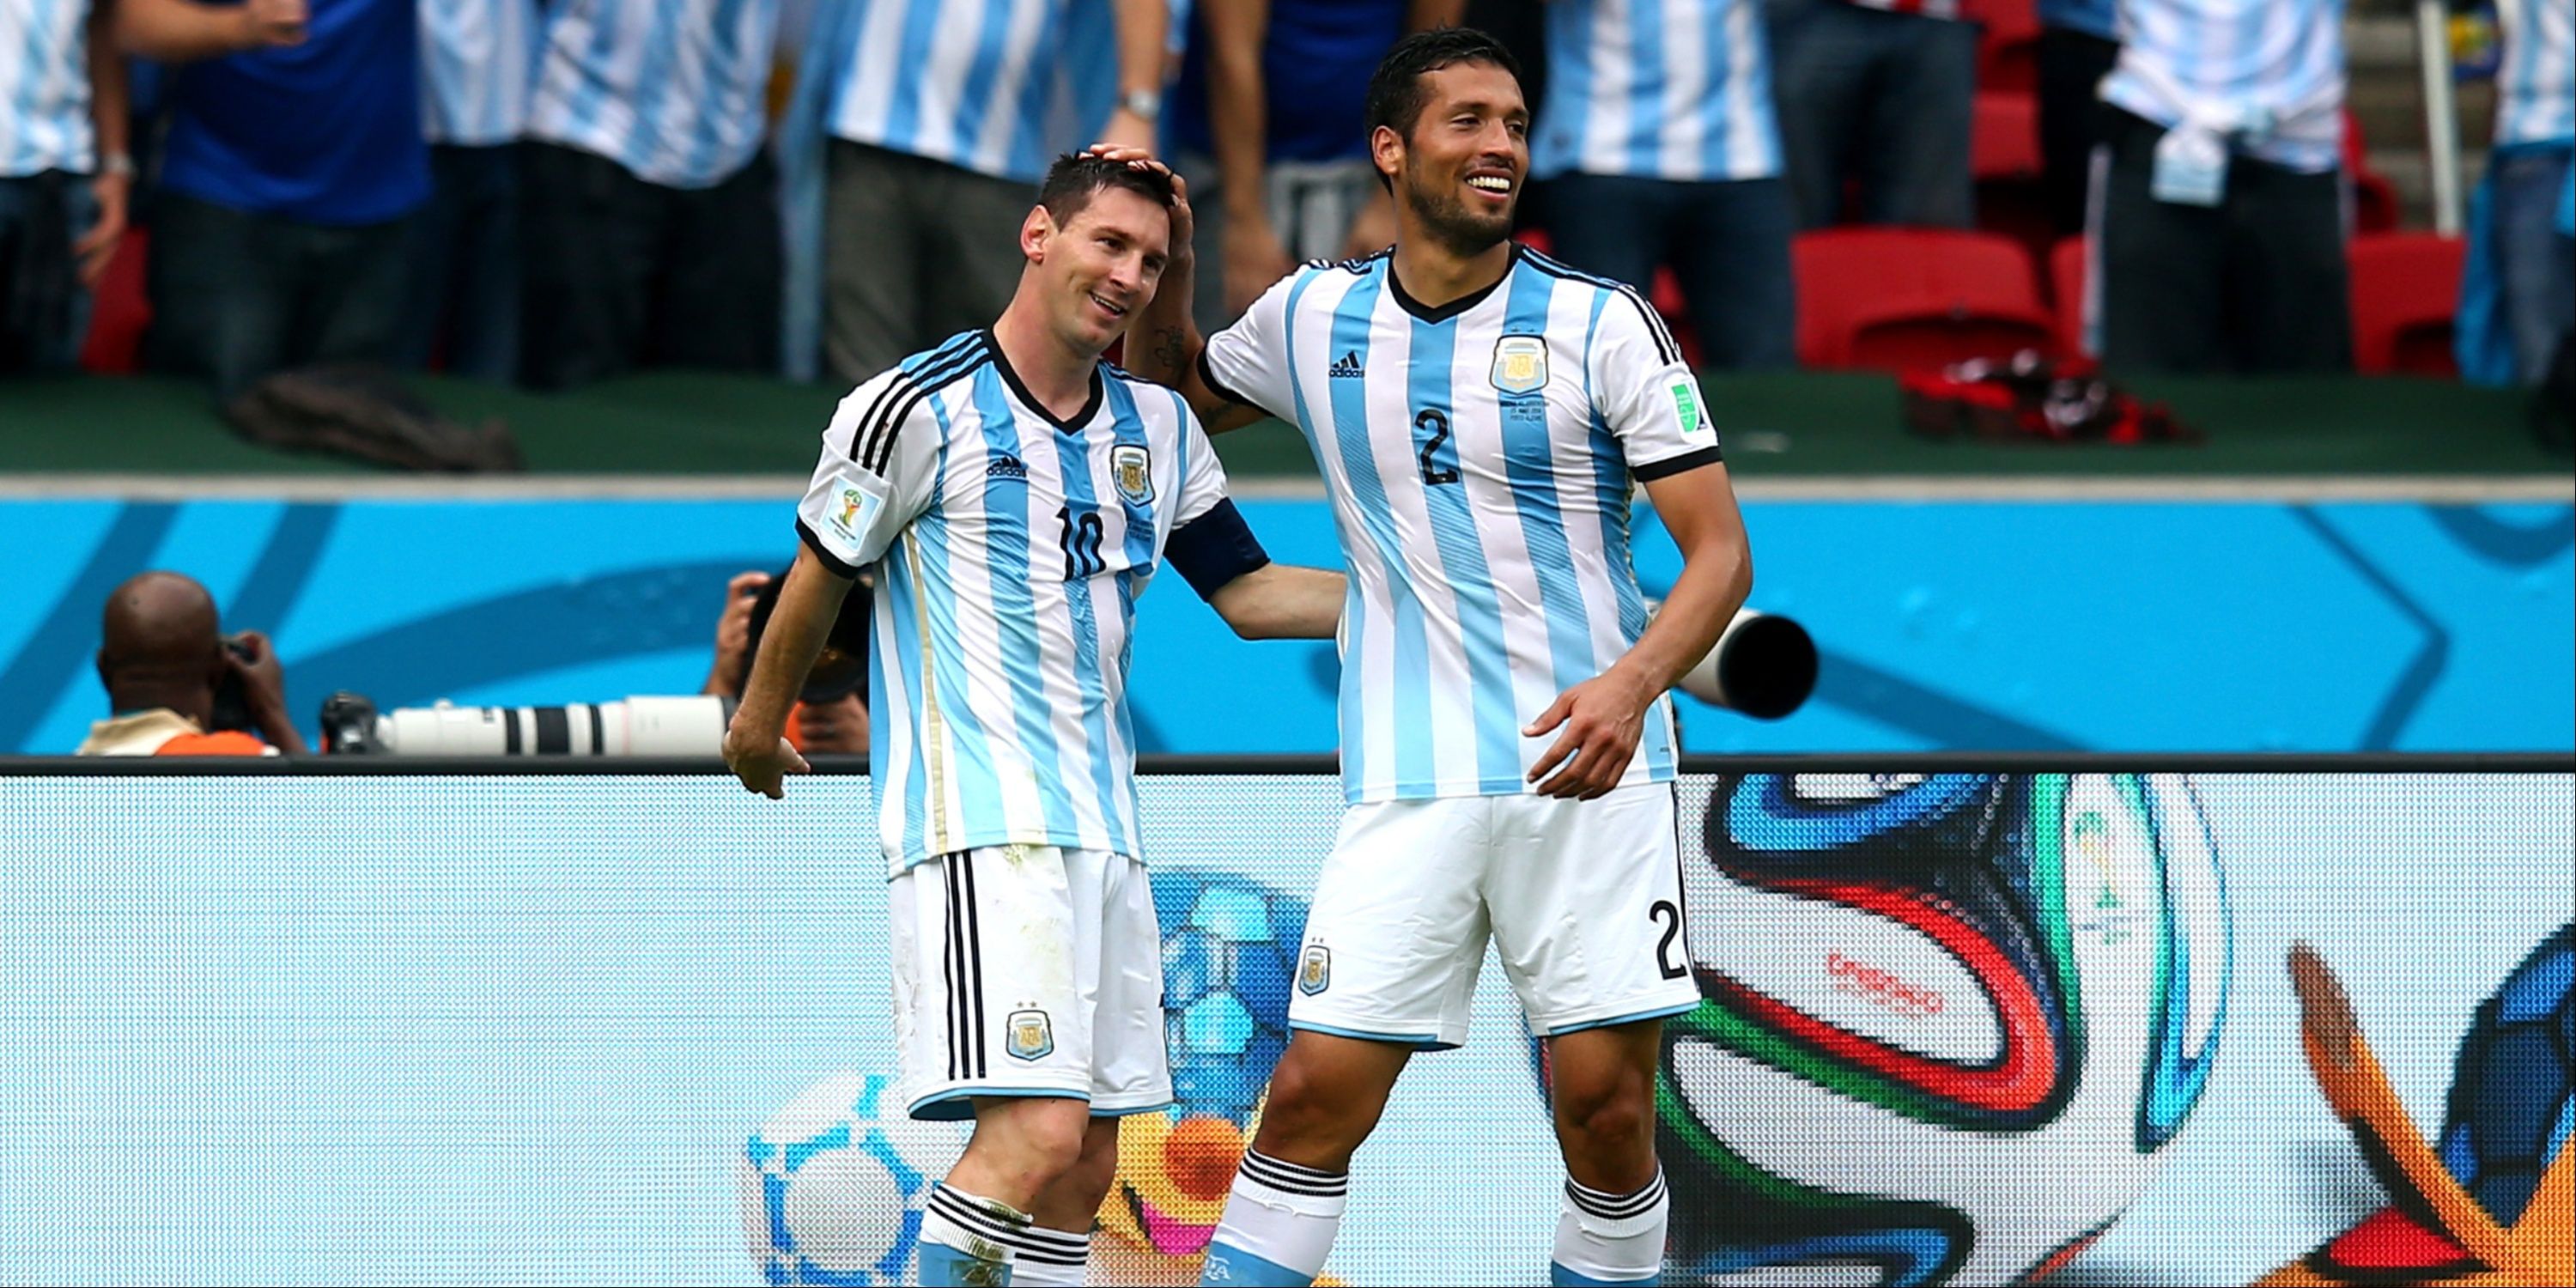 Lionel Messi (L) of Argentina celebrates with his teammate Ezequiel Garay